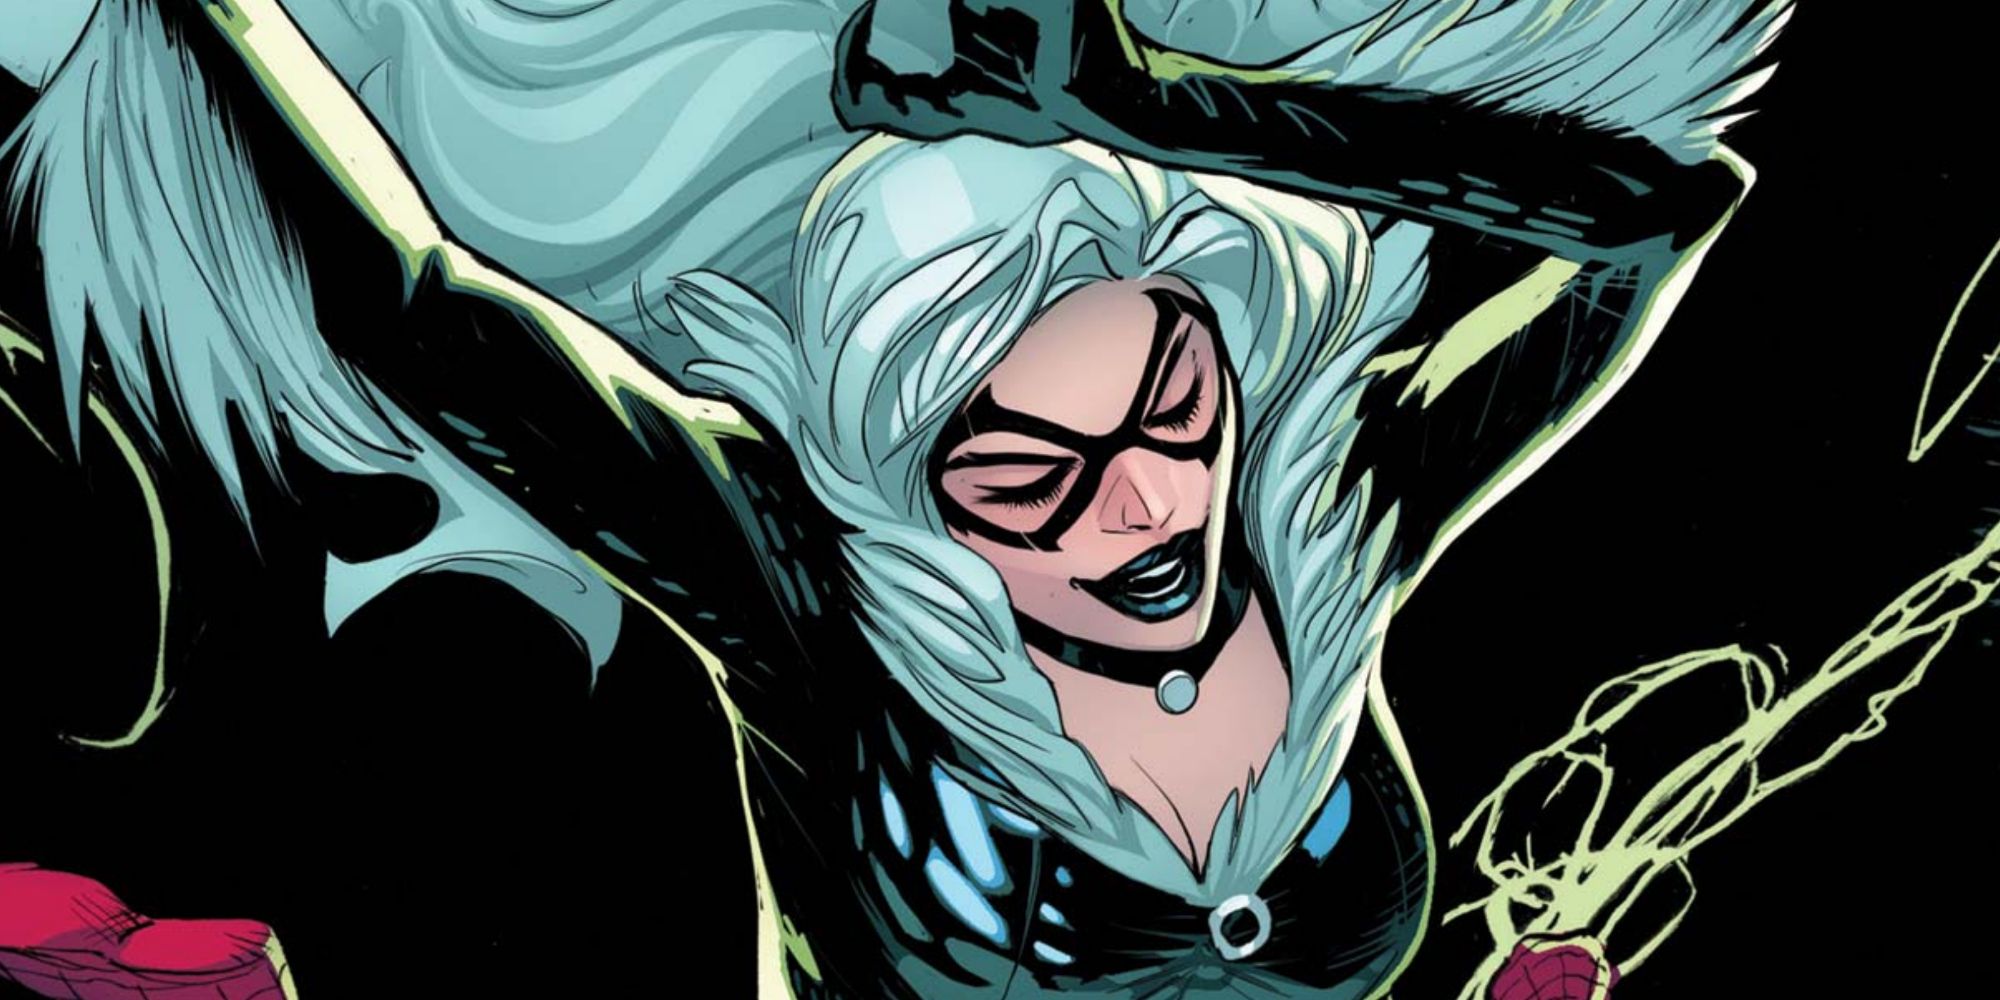 Black Cat jumps in Marvel Comics